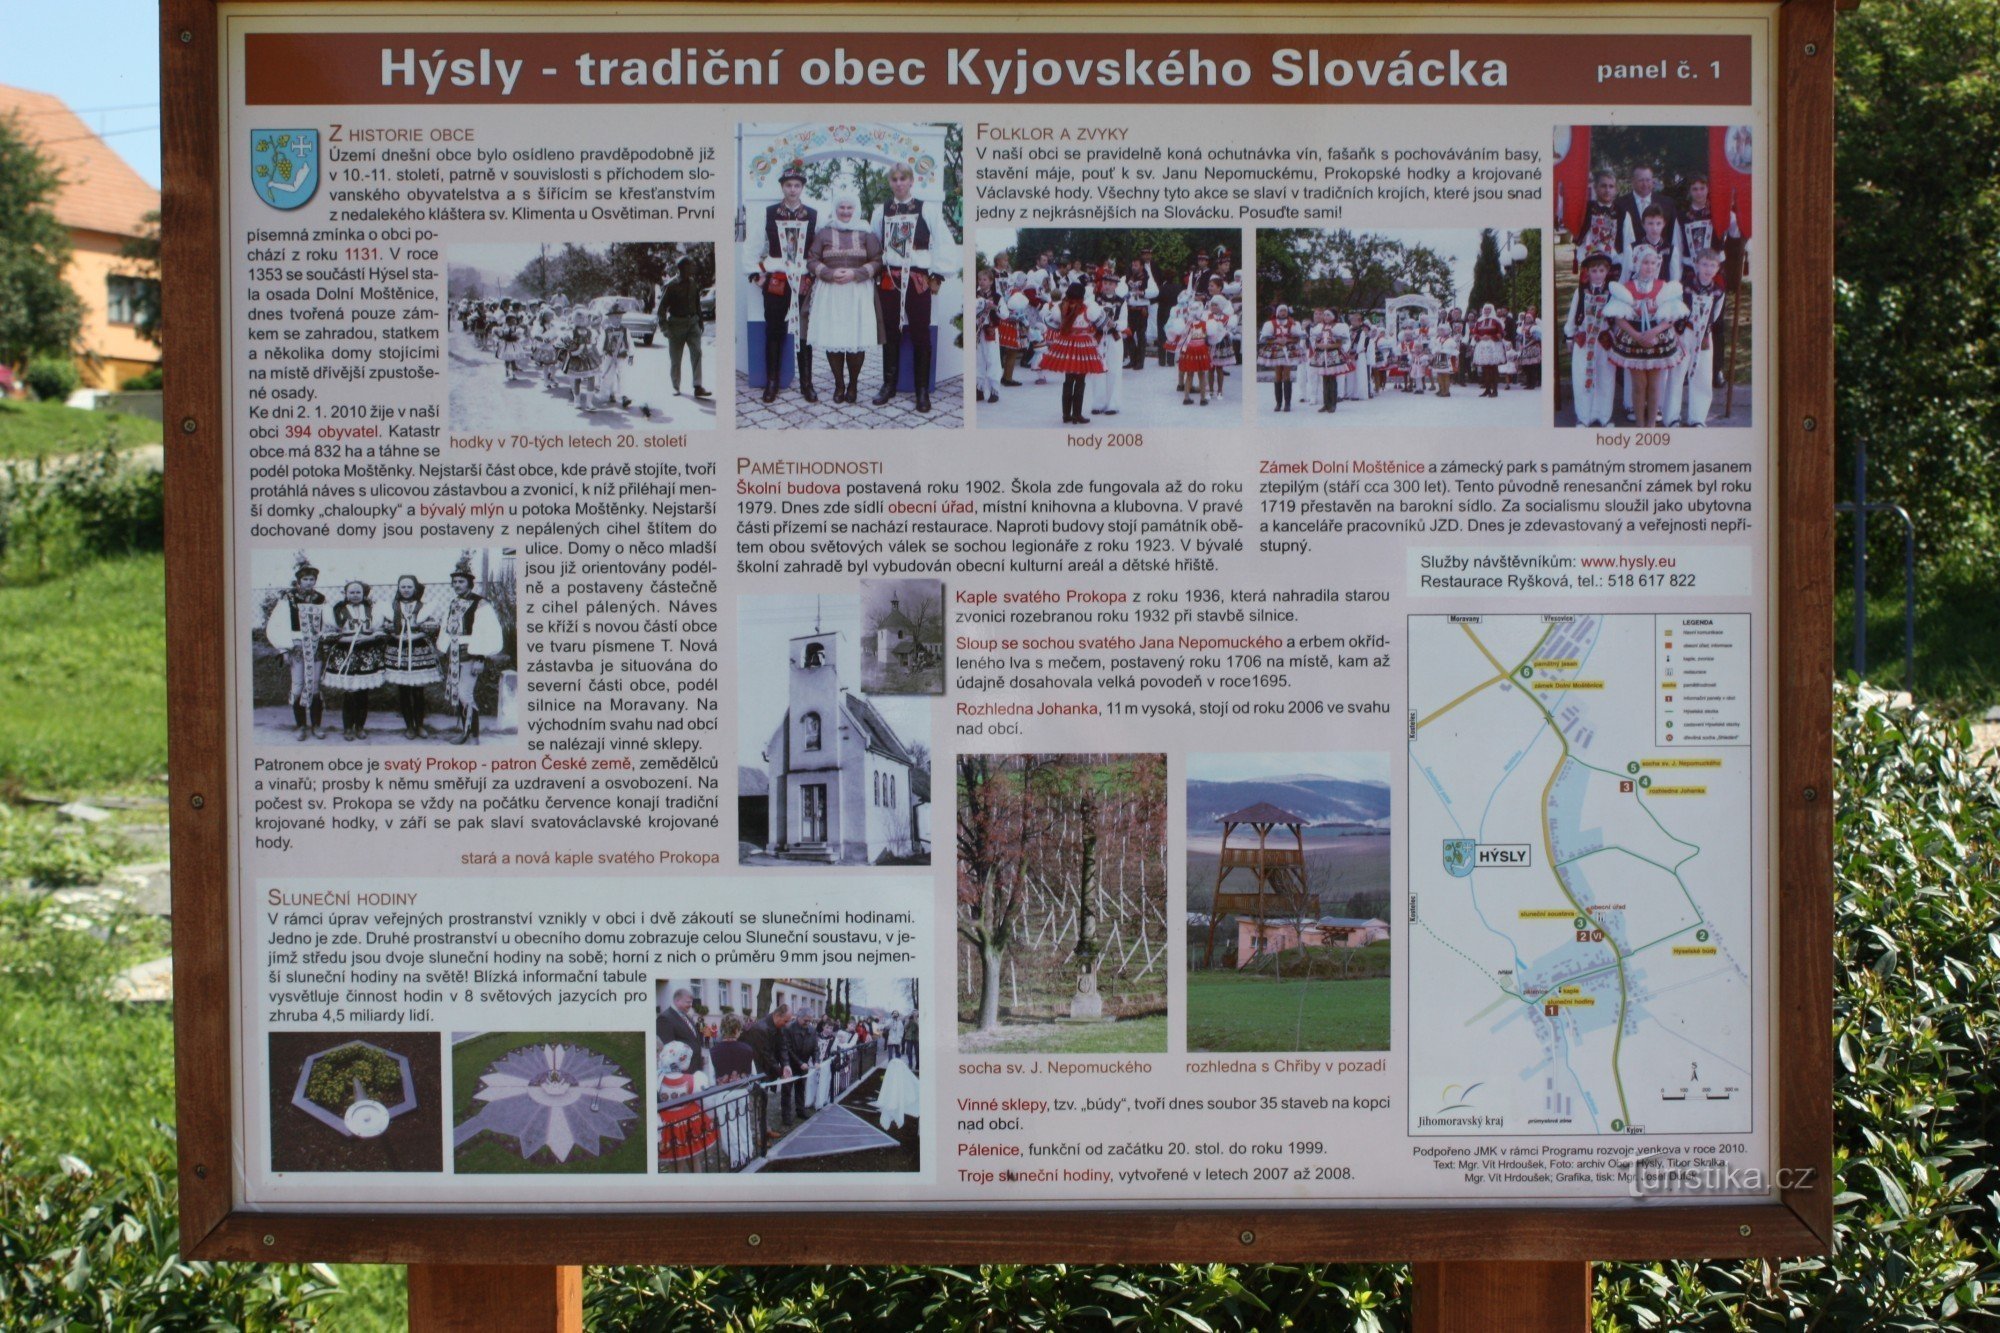 Hýsly, el pueblo de interés turístico de Slovácka